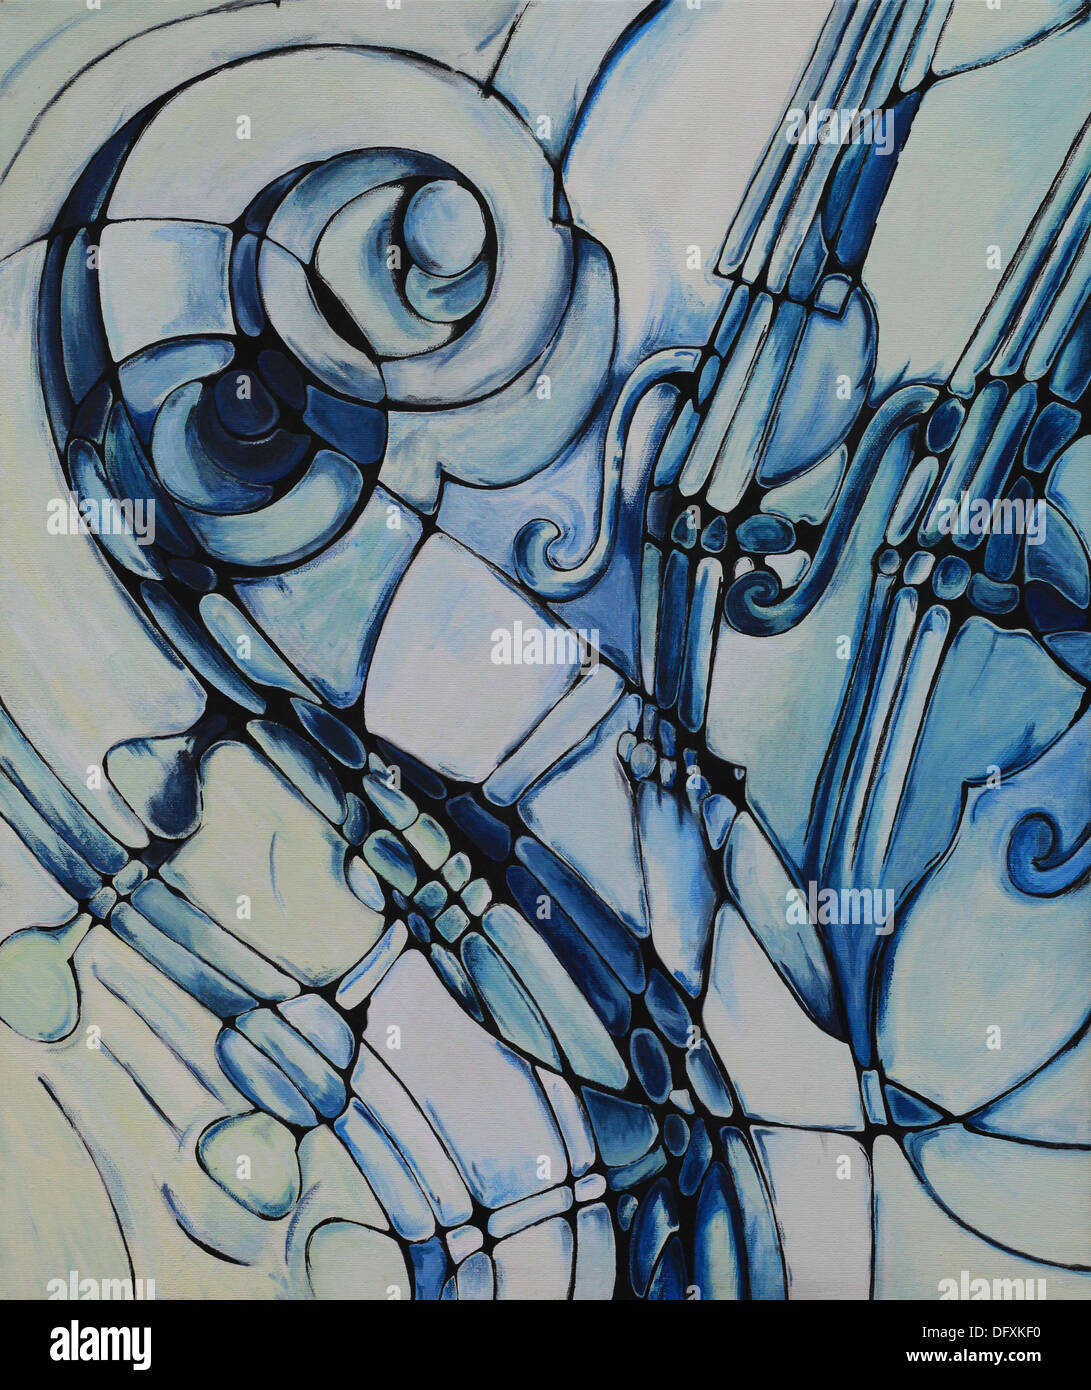 Acrylique abstrait peinture représentant des instruments à cordes comme violoncelles ou contrebasses. Banque D'Images